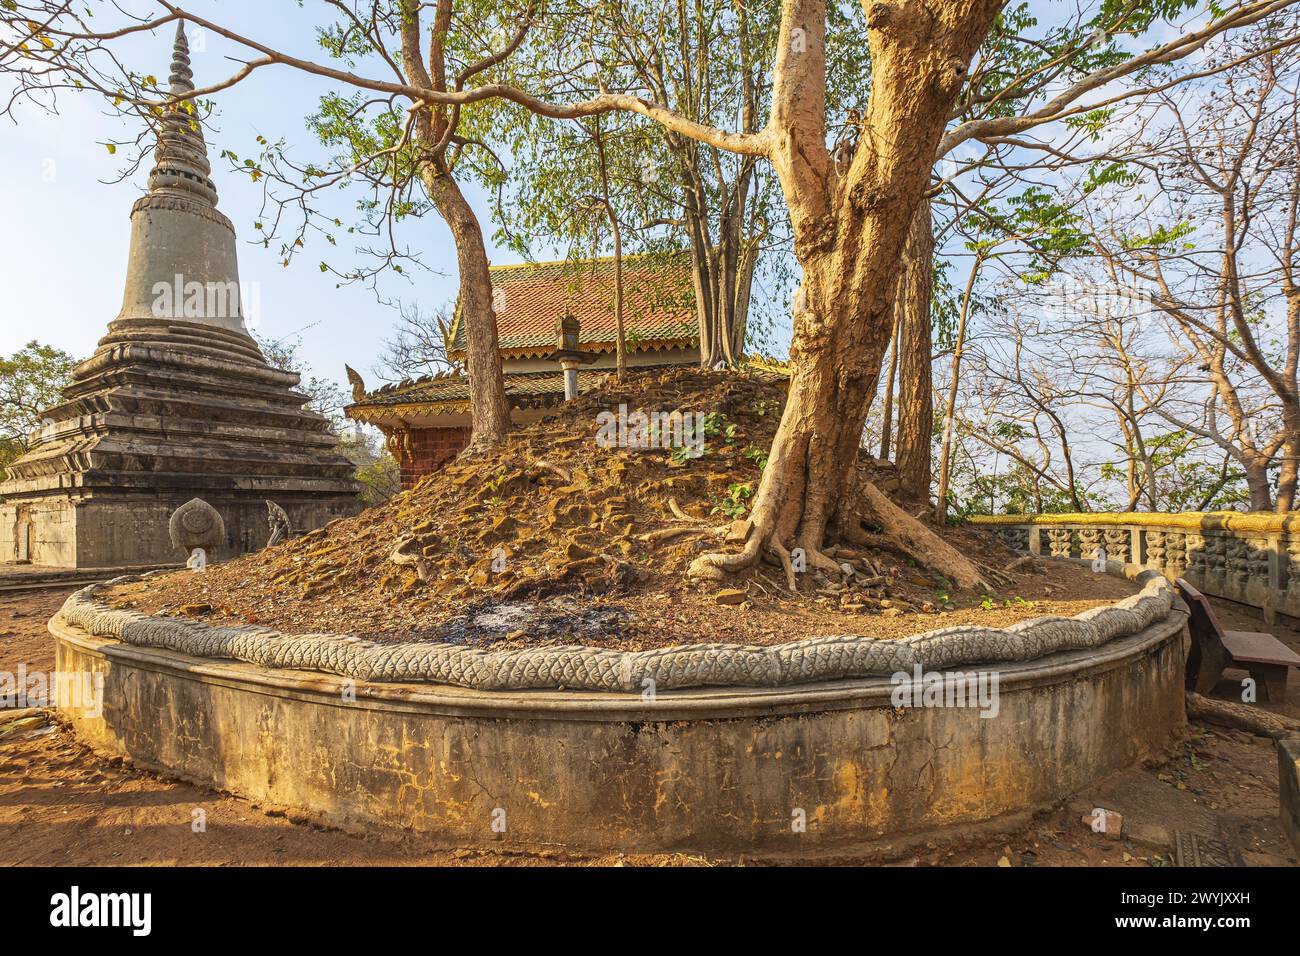 Cambodge, province de Kandal, Oudong, ancienne capitale du Cambodge depuis près de 250 ans jusqu'en 1866 et nécropole royale monumentale dispersée sur une colline Banque D'Images